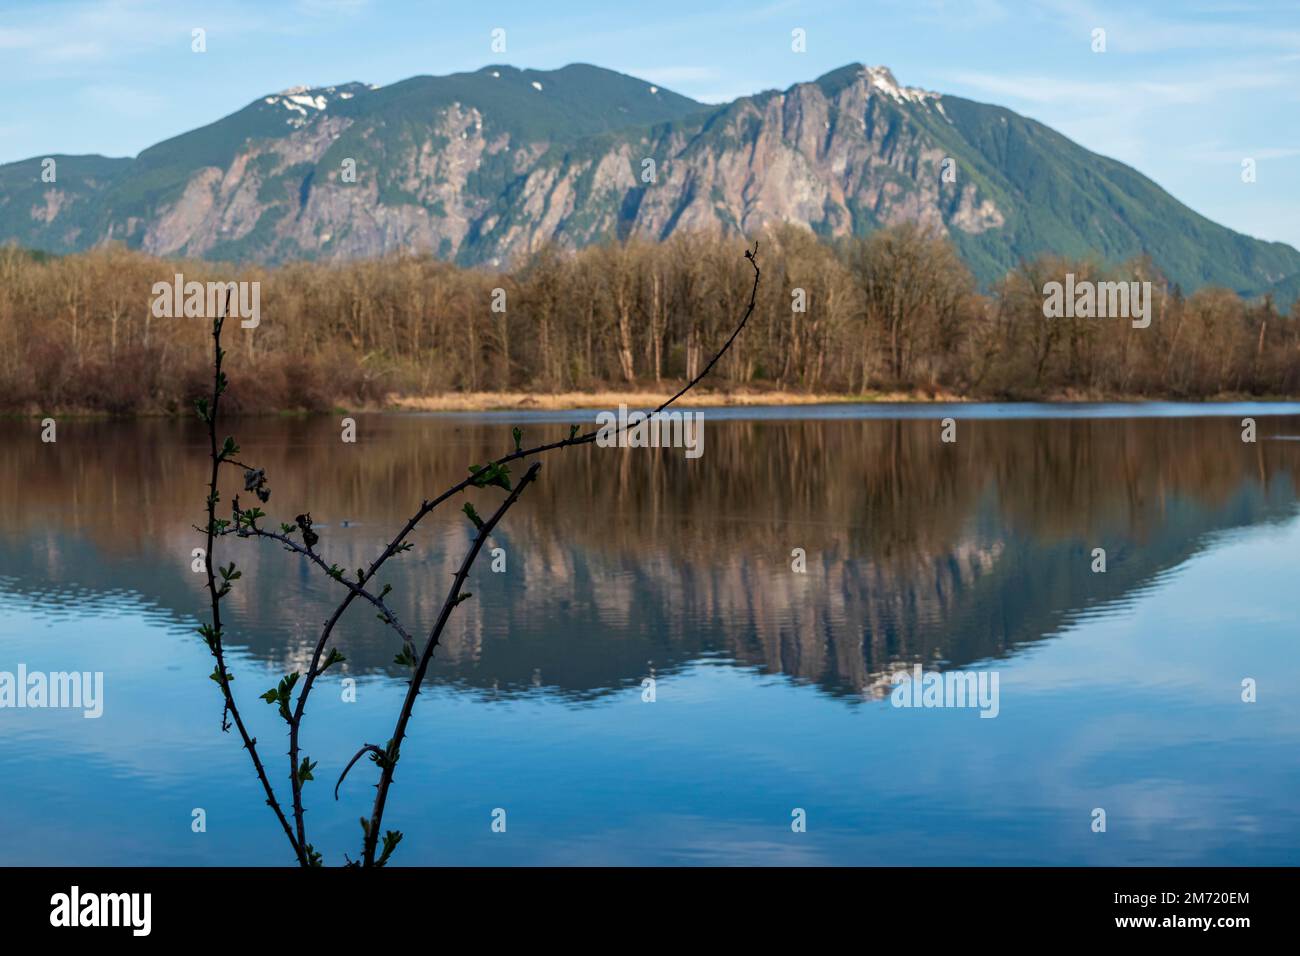 Frühe Brombeeren-Brombeeren sind im Vordergrund mit Mount Si und einer Reihe blattloser Bäume, die sich im ruhigen Wasser des Borst Lake in Snoqual widerspiegeln Stockfoto